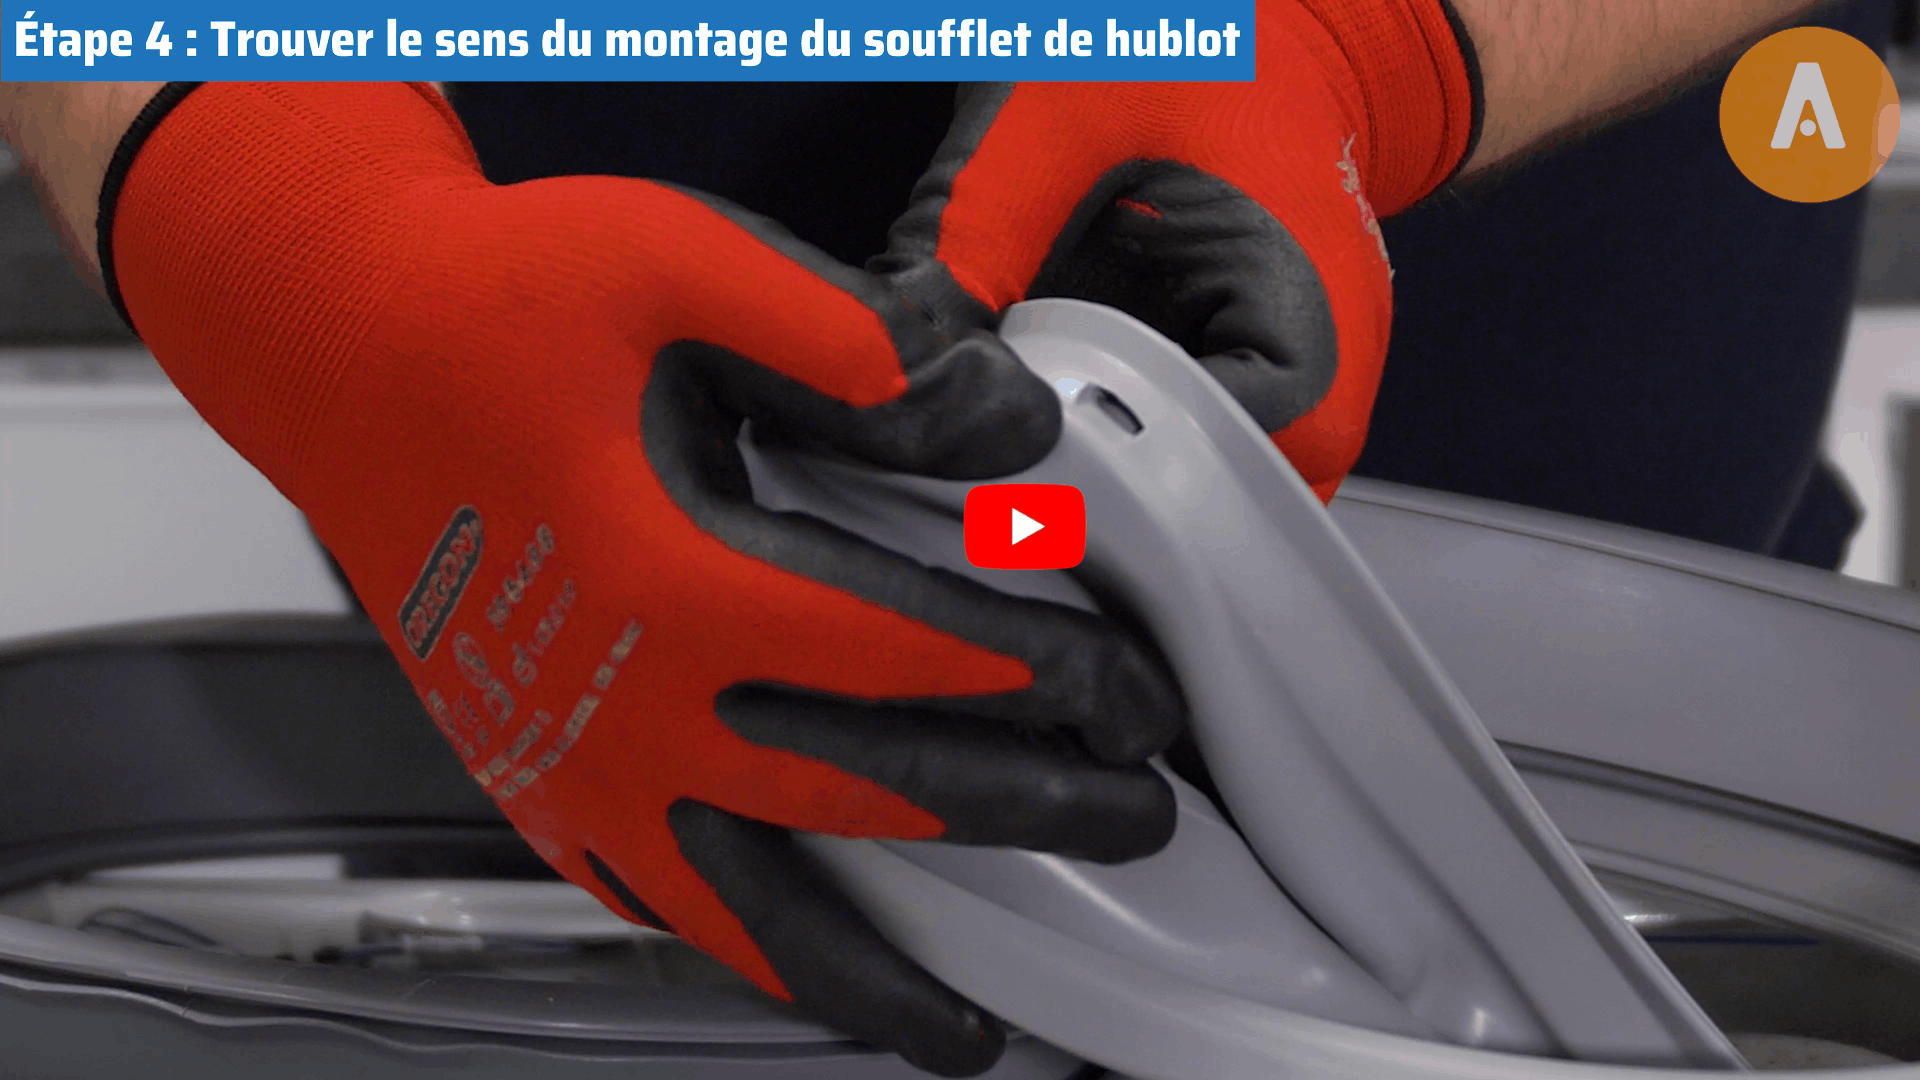 Tutoriel vidéo : comment changer le joint de porte de ma machine à laver ?